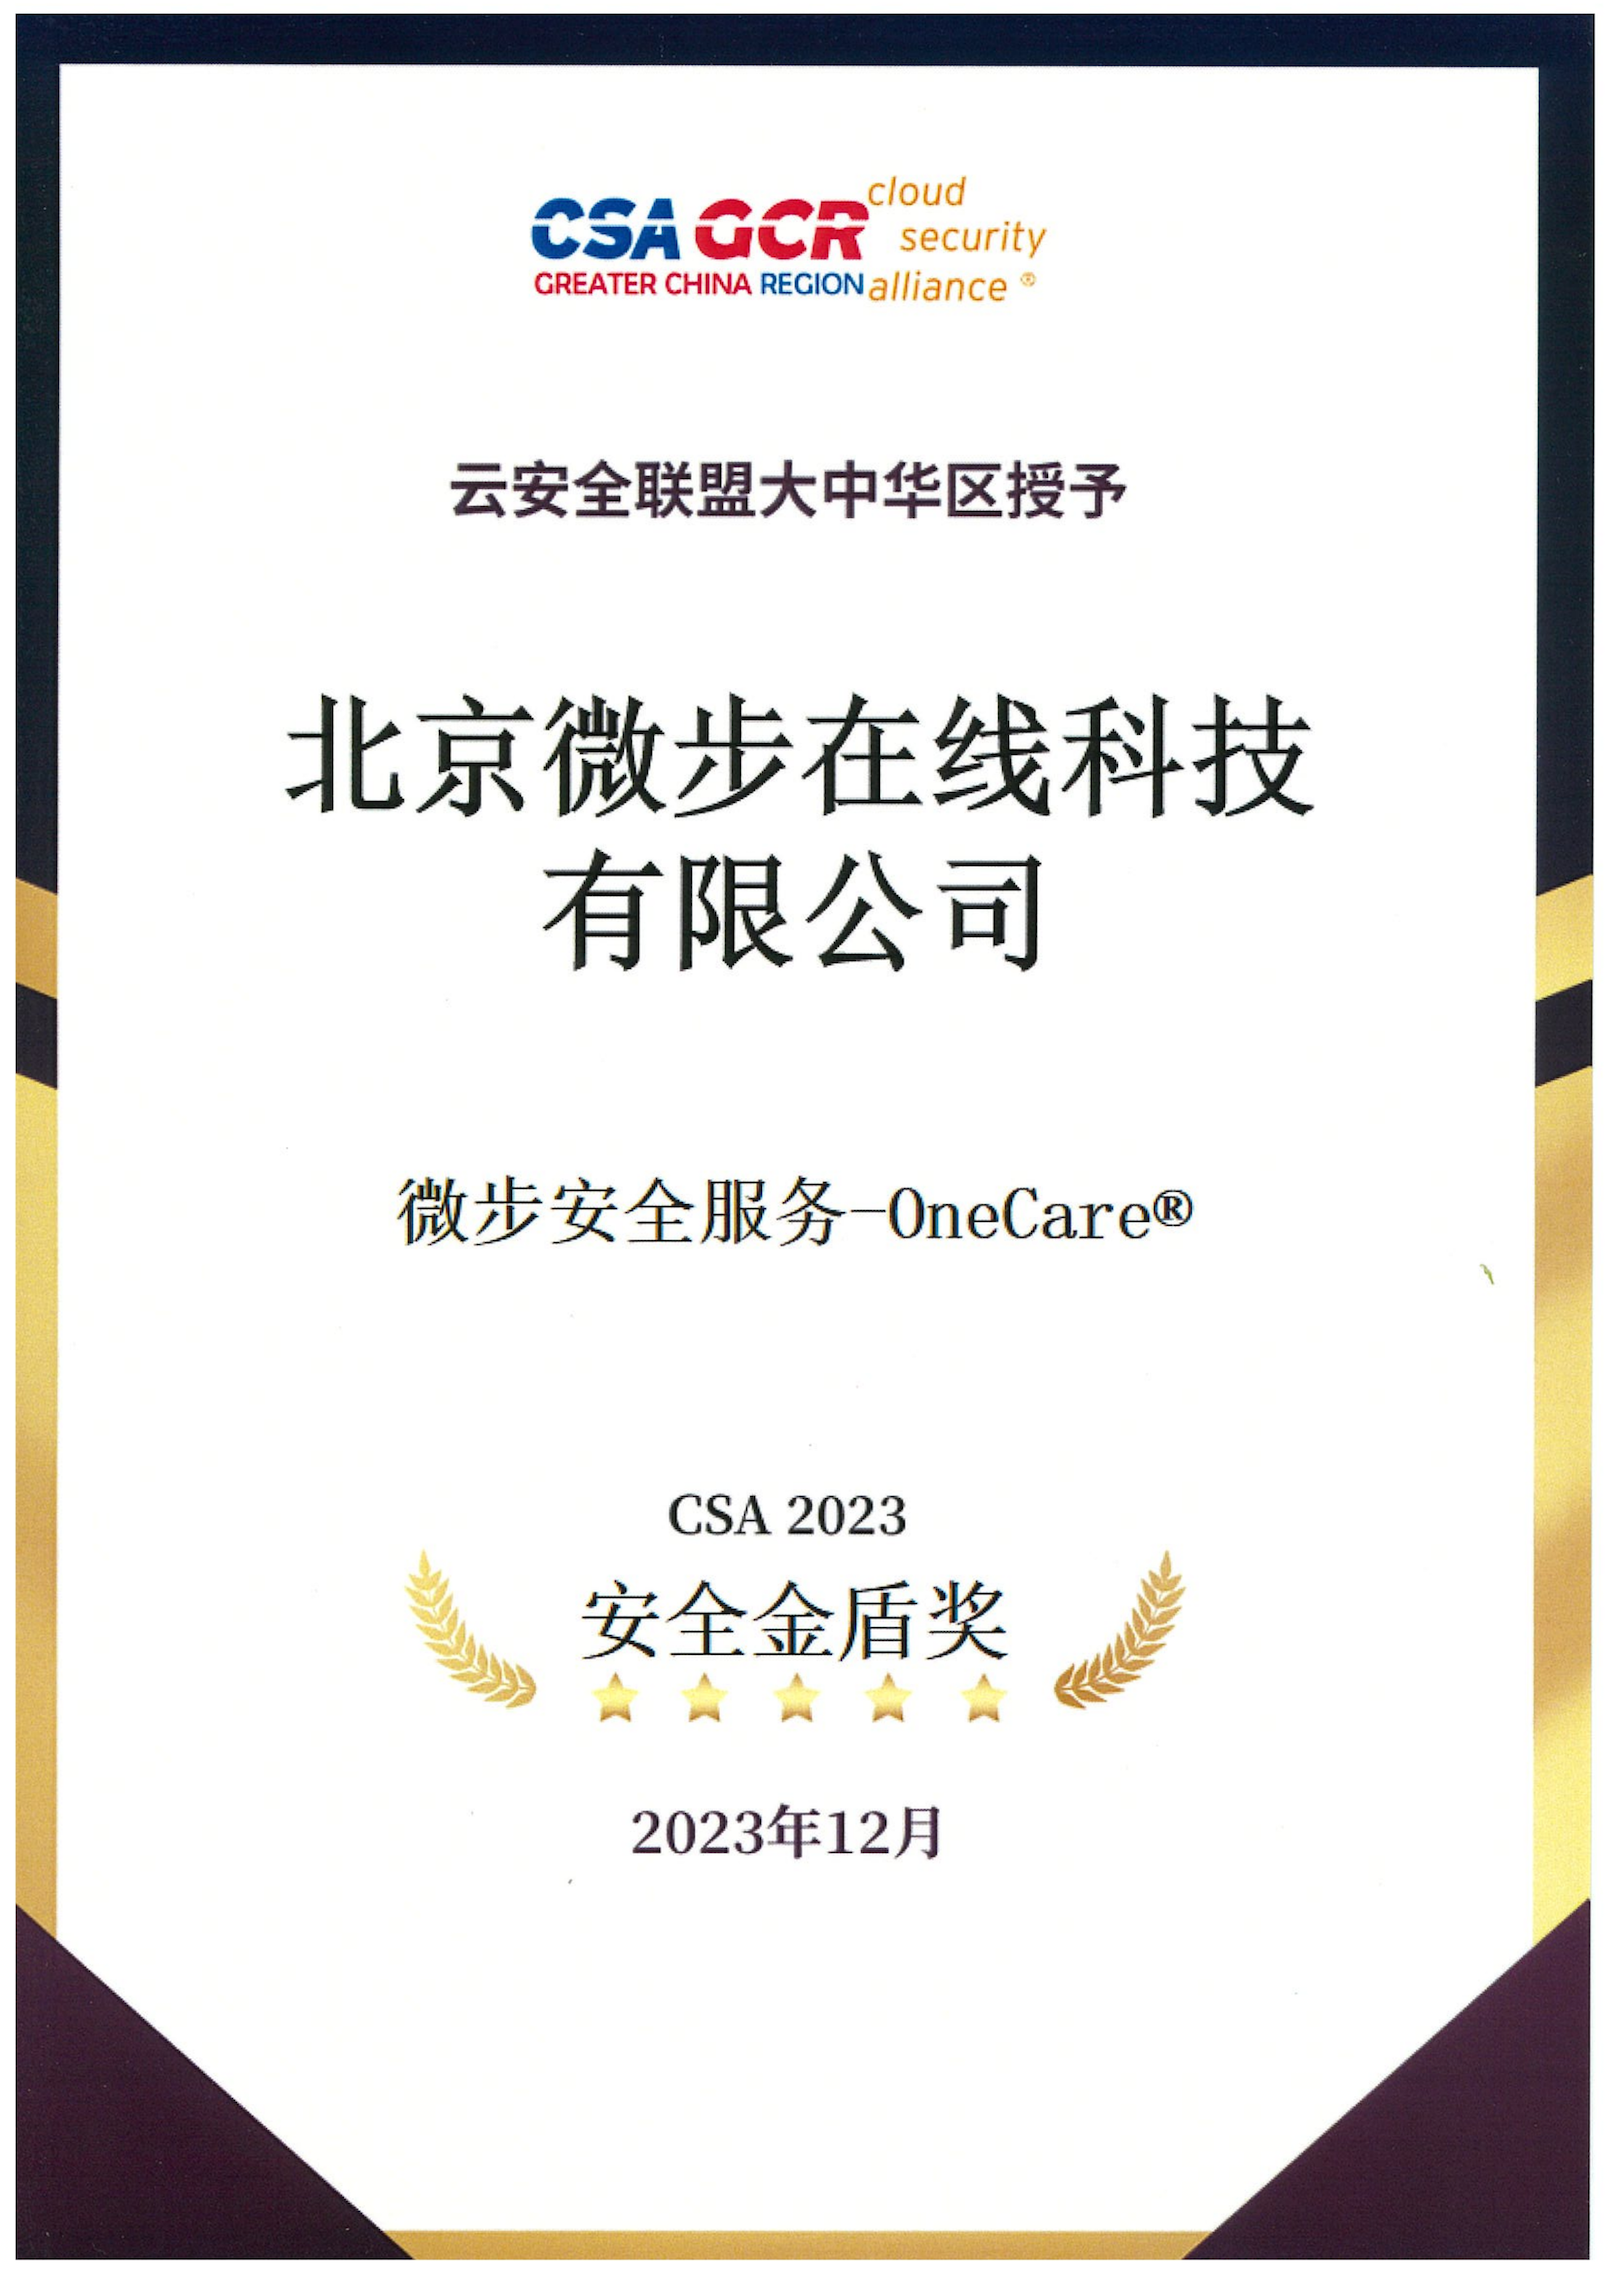 微步安全服务荣获“CSA 2023安全金盾奖”